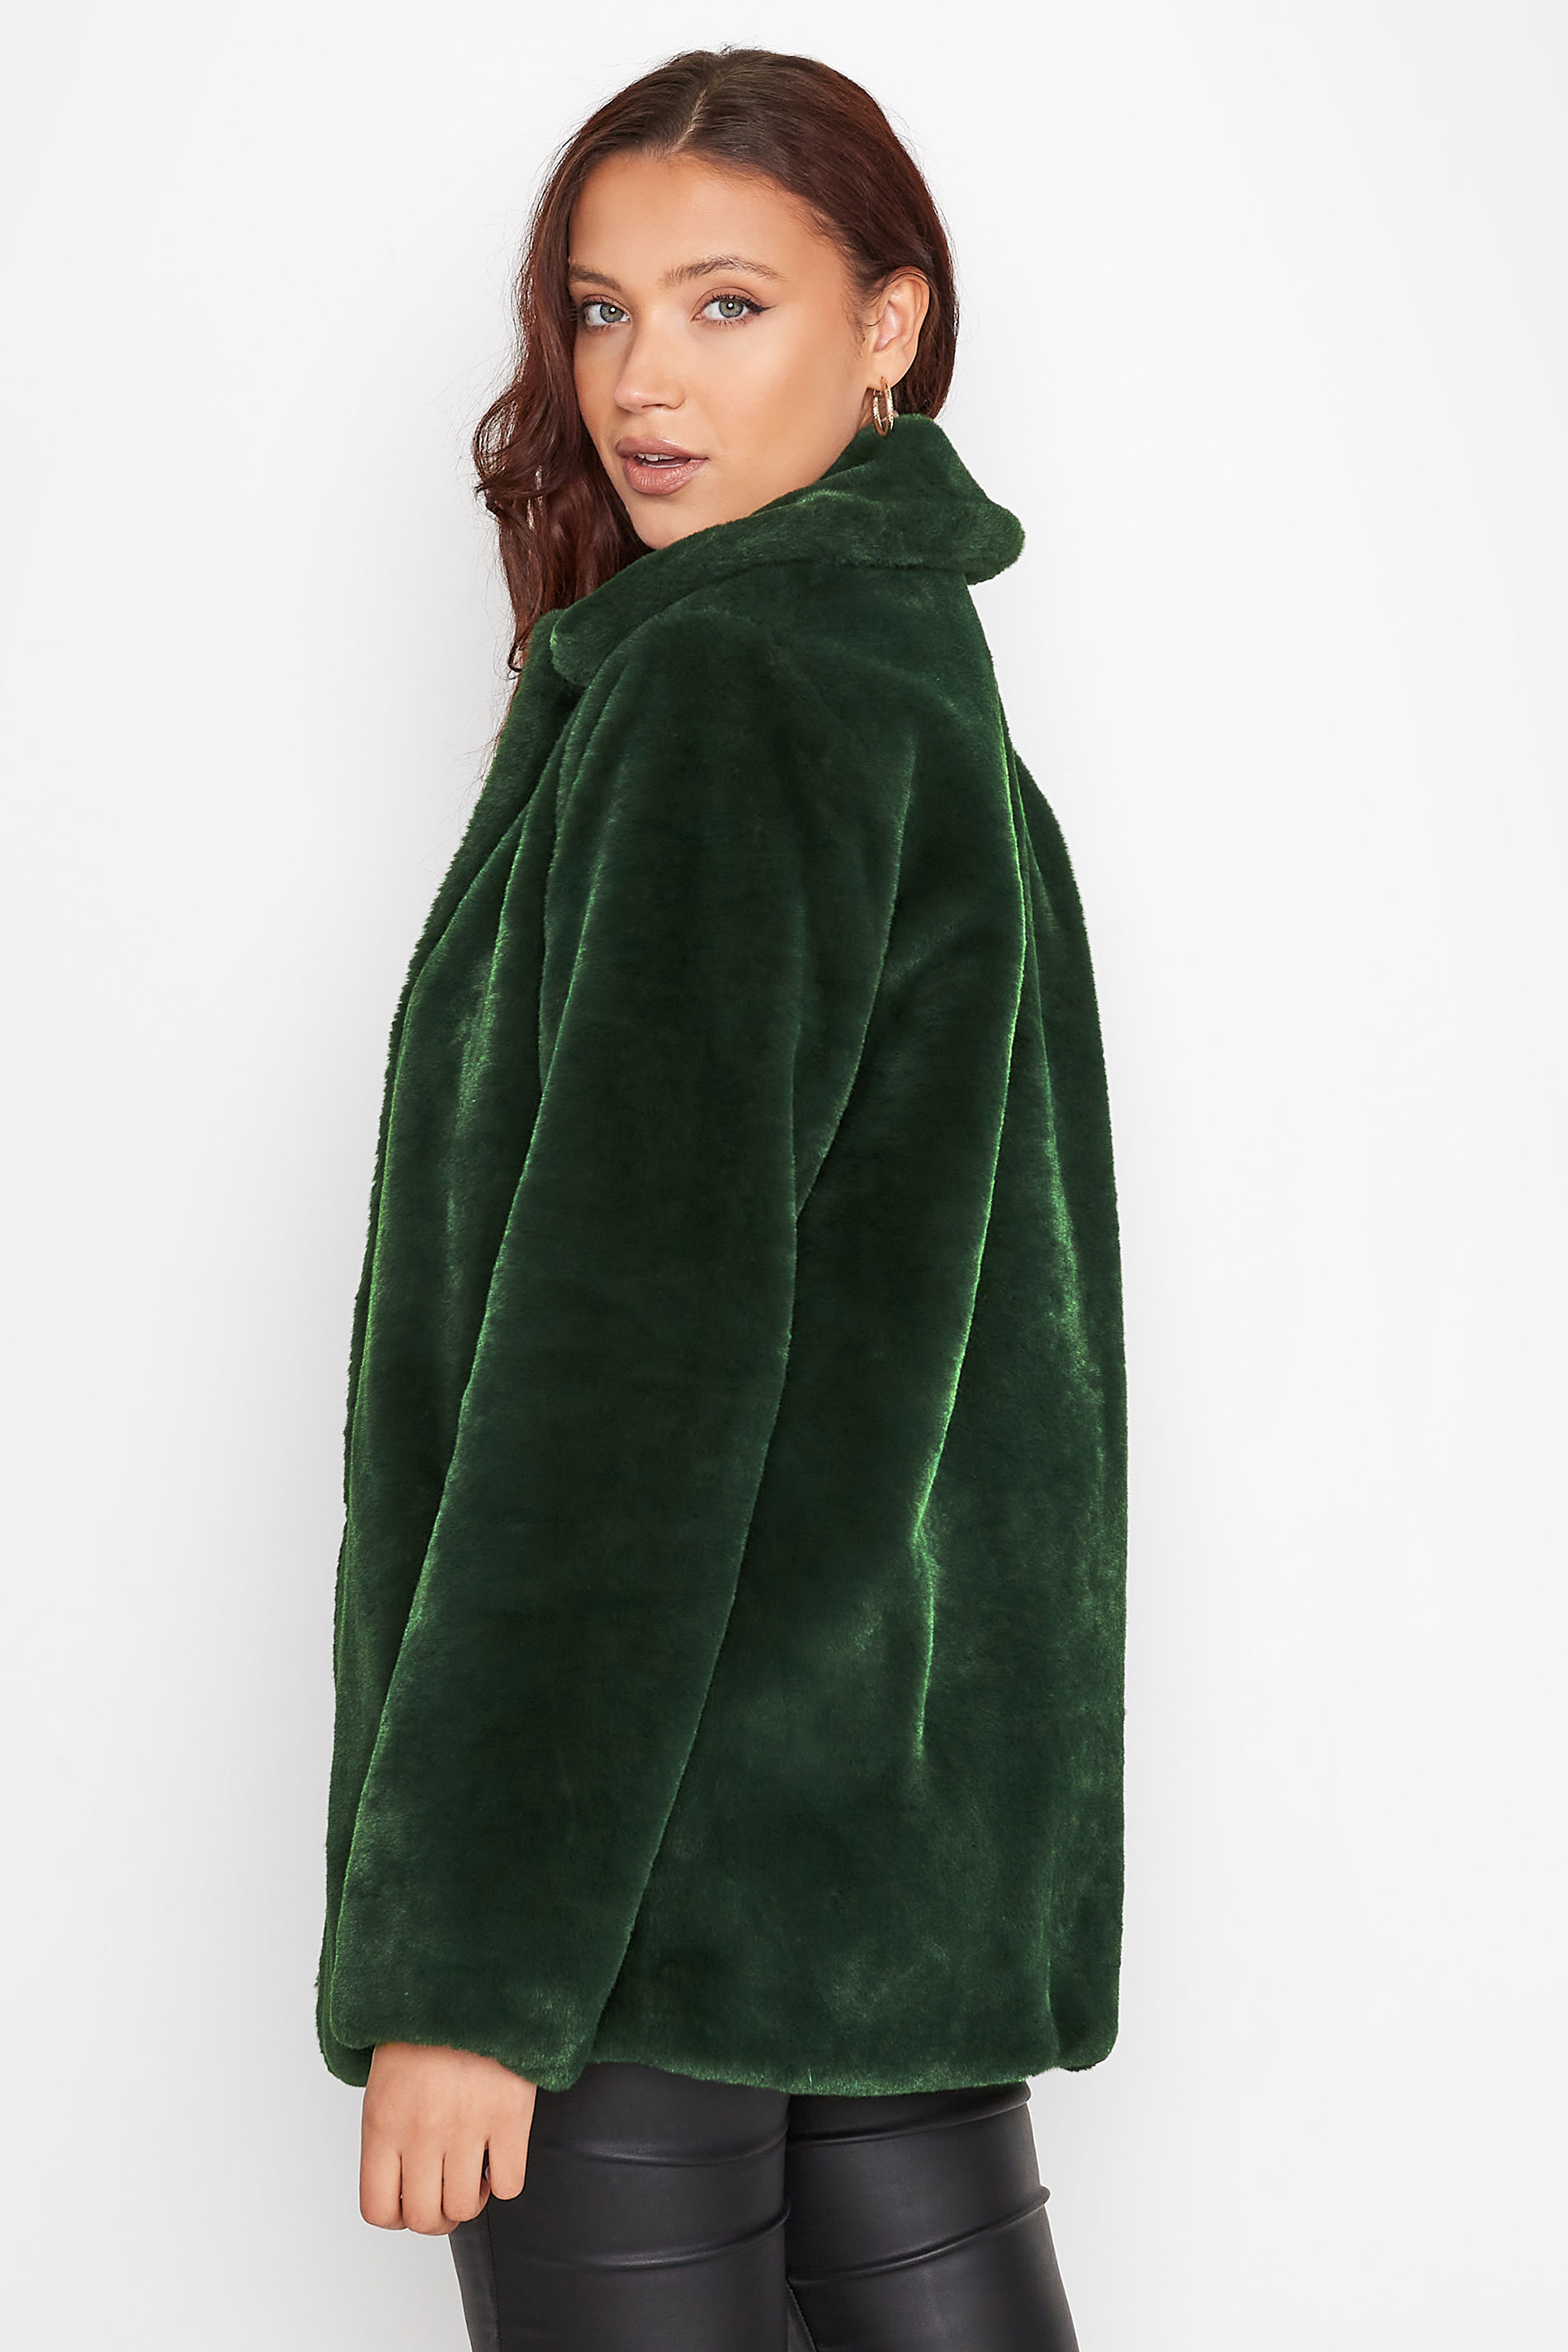 LTS Tall Women's Dark Green Faux Fur Jacket | Long Tall Sally